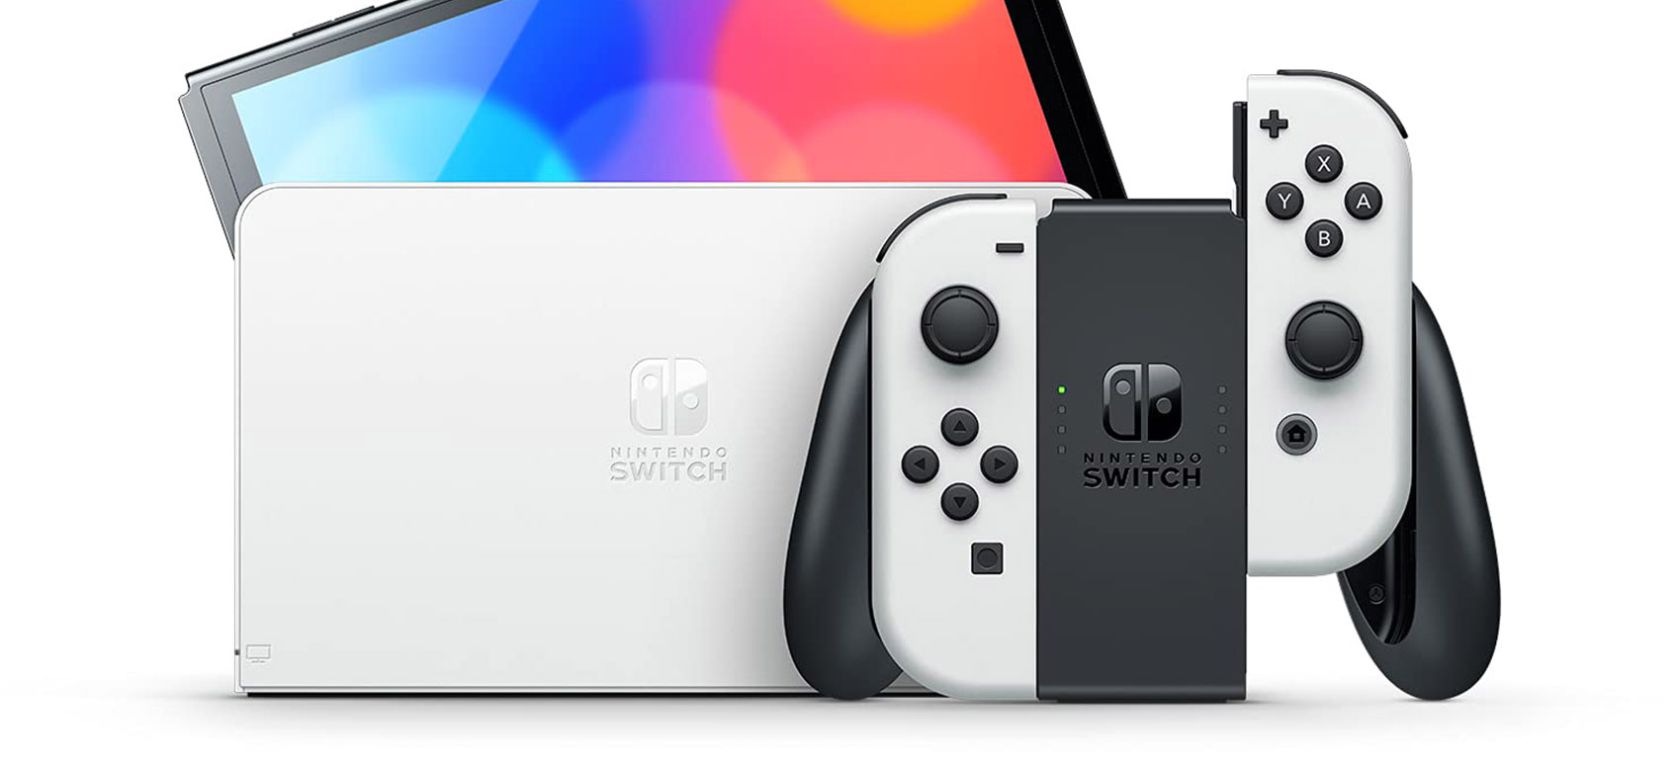 Información robada a NVidia descubre detalles de una nueva Nintendo Switch